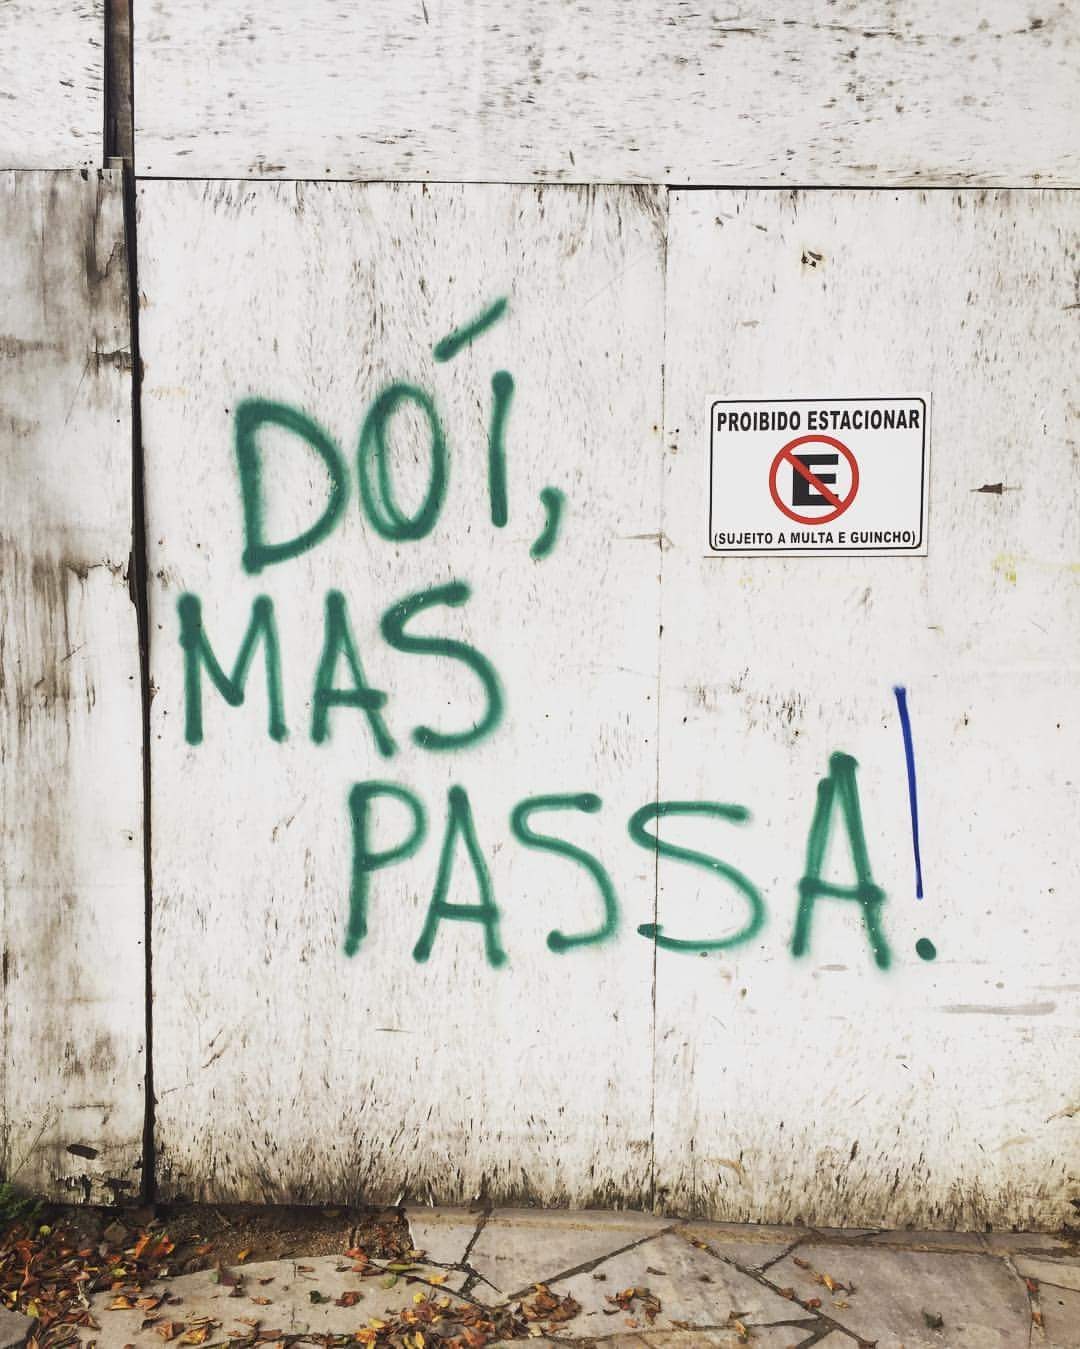 morar em portugal: check list antes da mudança